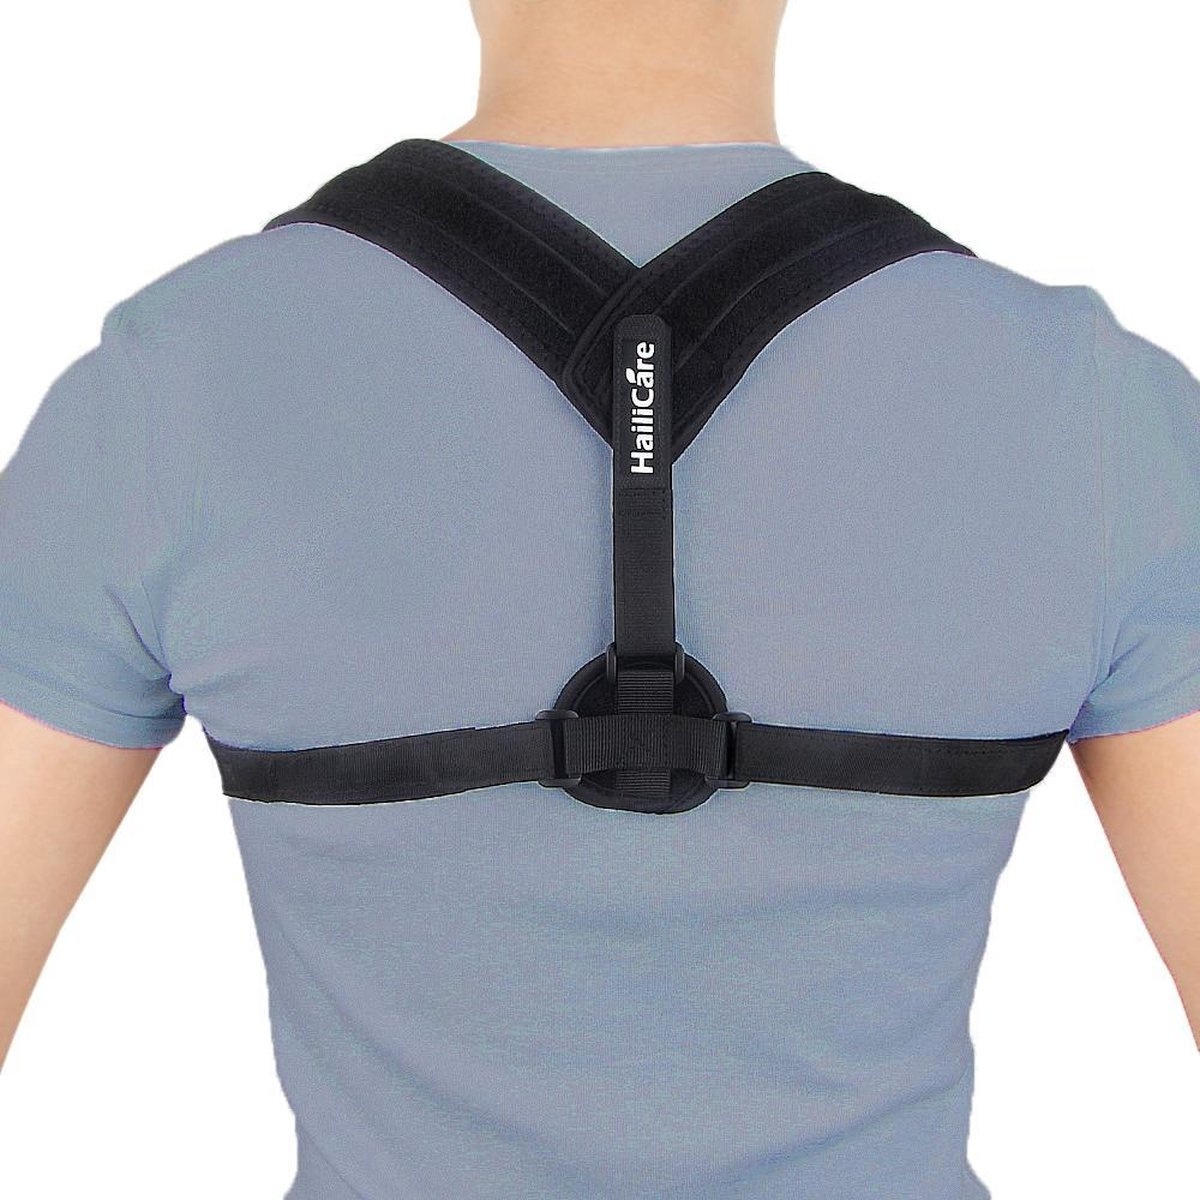 und Band günstig Kaufen-Rückenbandage - Einheitsgröße - Die Original Athena Premium Rückenbandage - Haltungskorrekturbandage - Rücken und Schulter. Rückenbandage - Einheitsgröße - Die Original Athena Premium Rückenbandage - Haltungsko